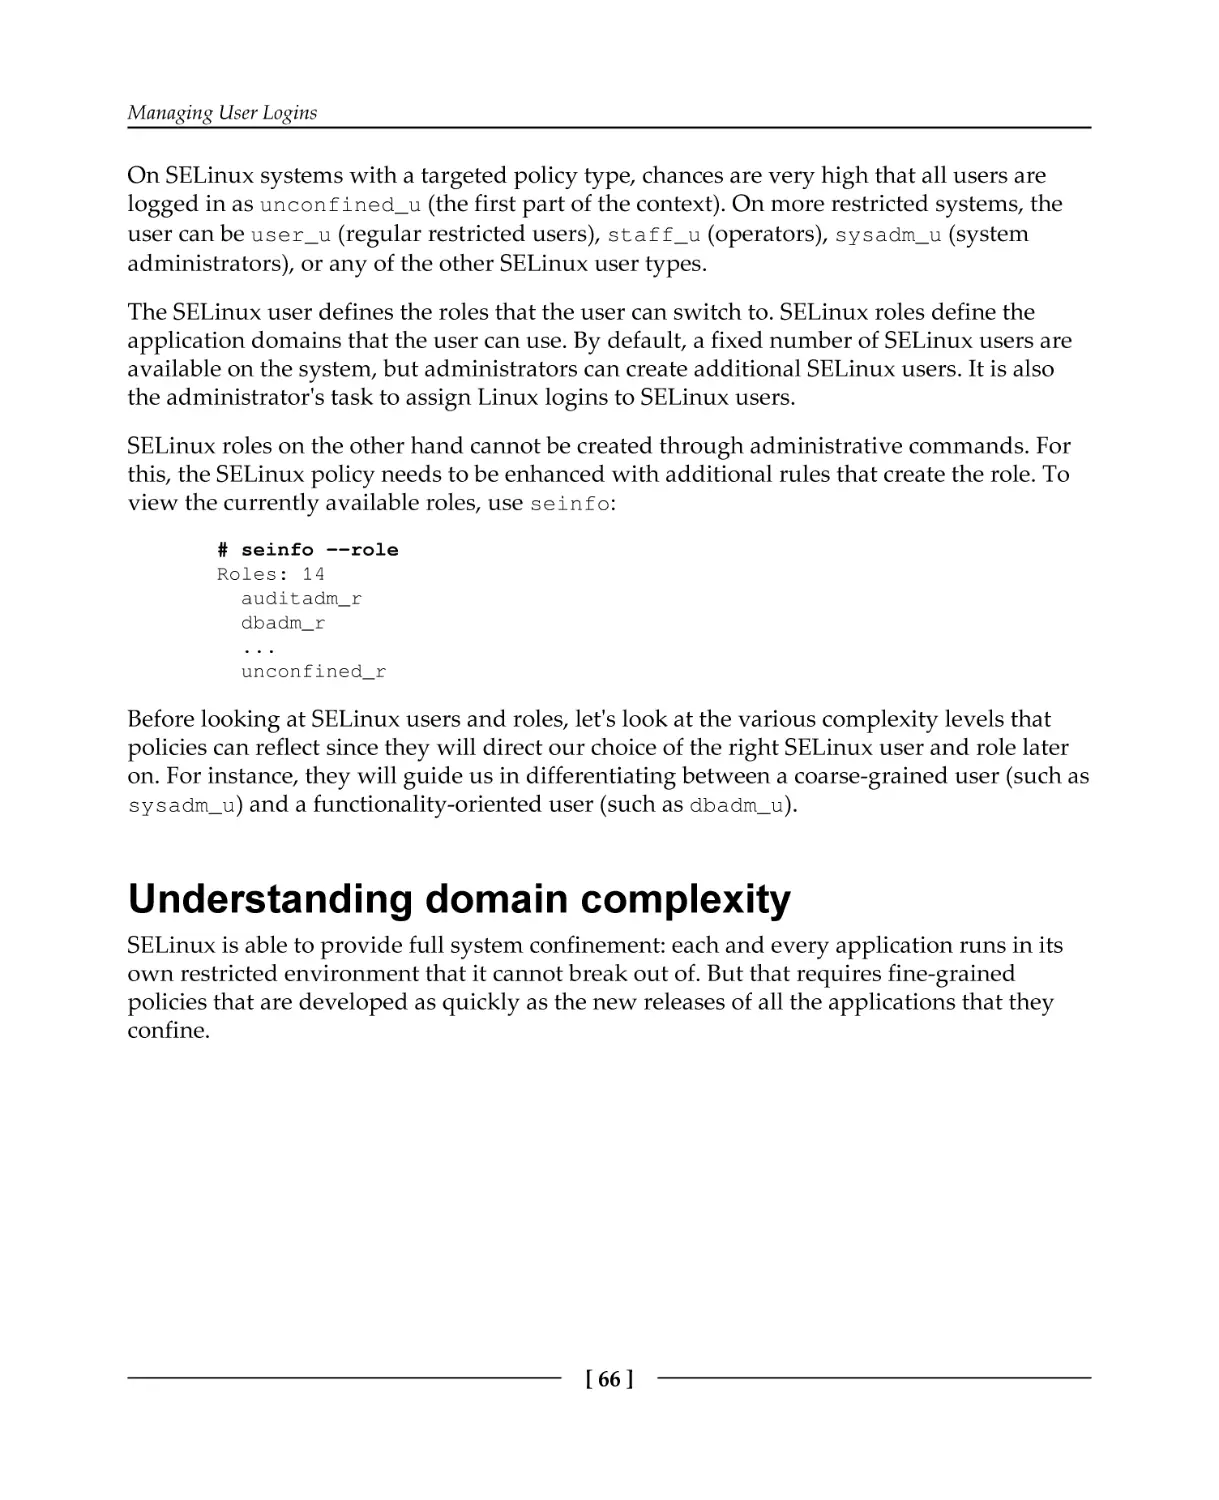 Understanding domain complexity